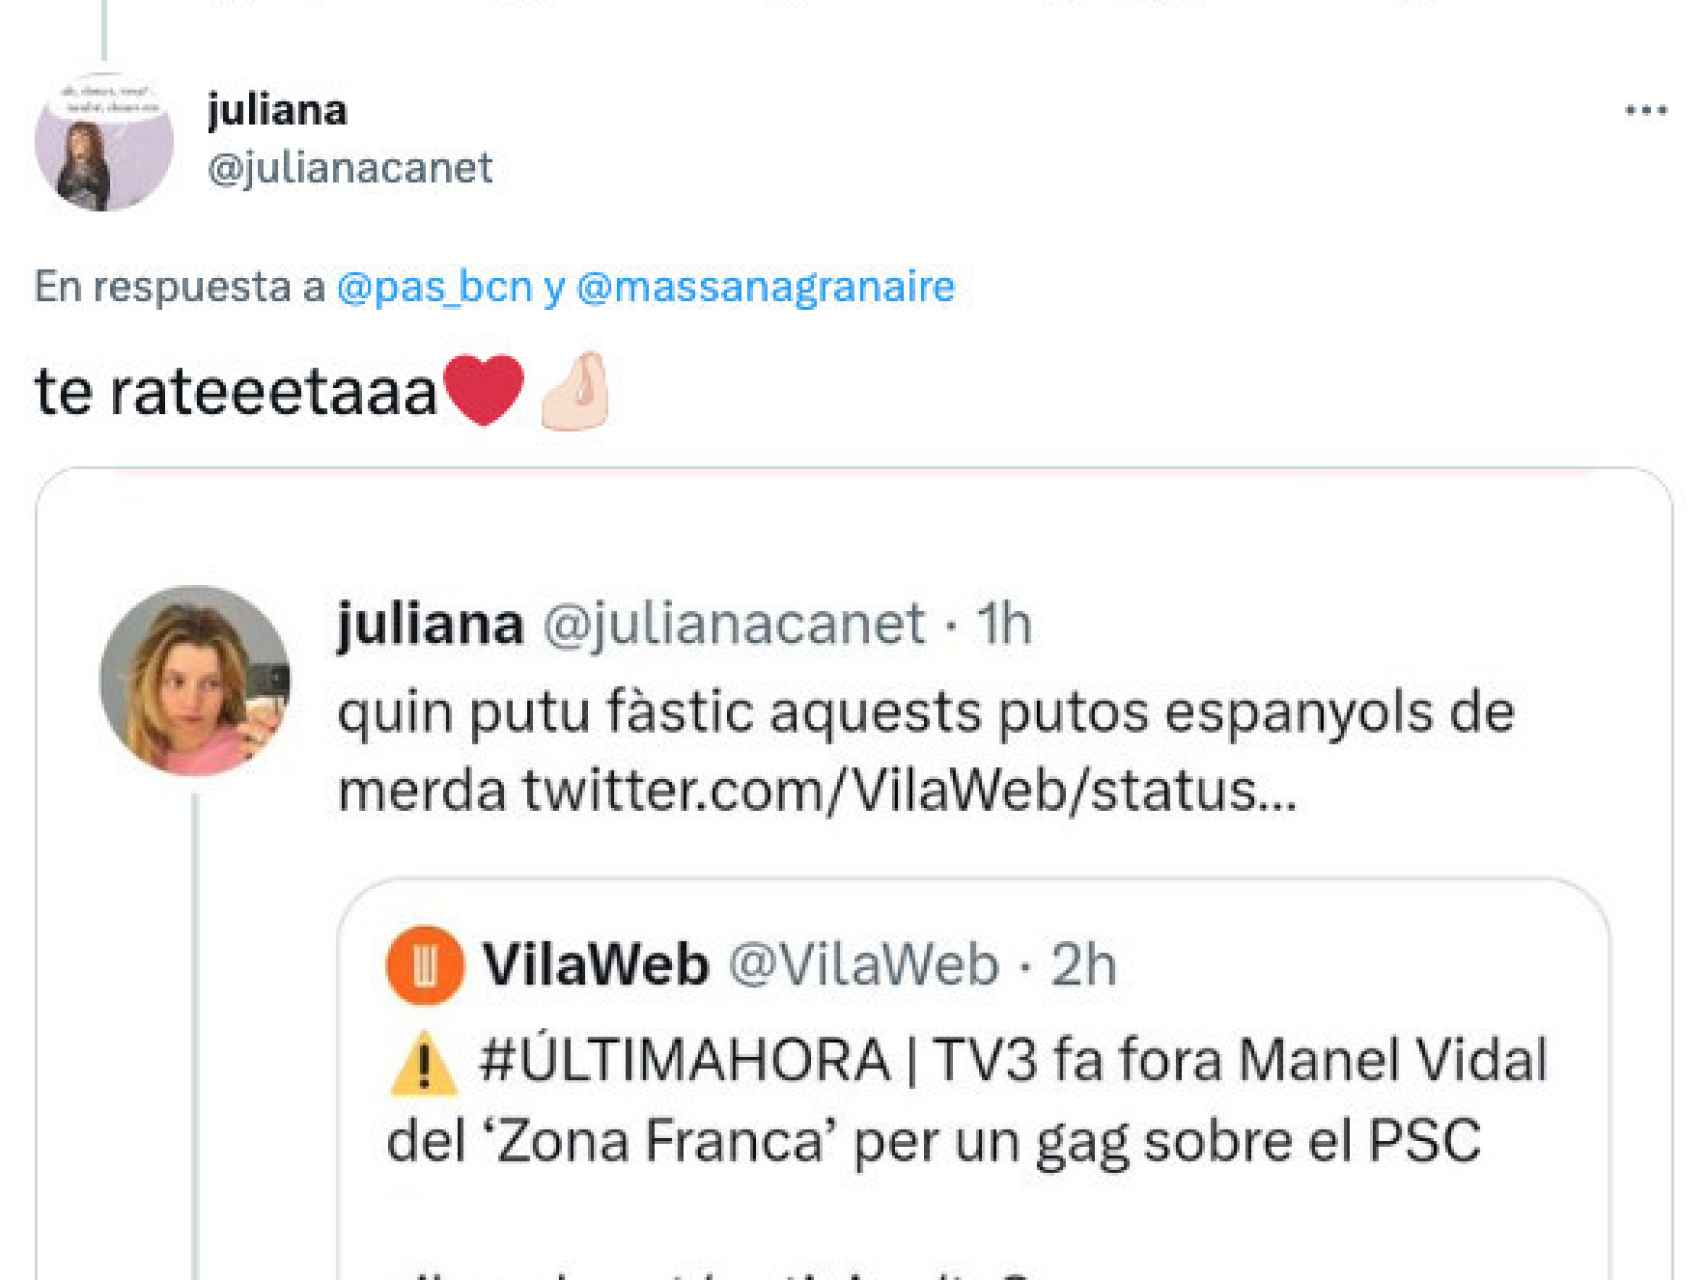 Tuit de Juliana Canet, presumiendo de su tuit borrado sobre los putos españoles de mierda